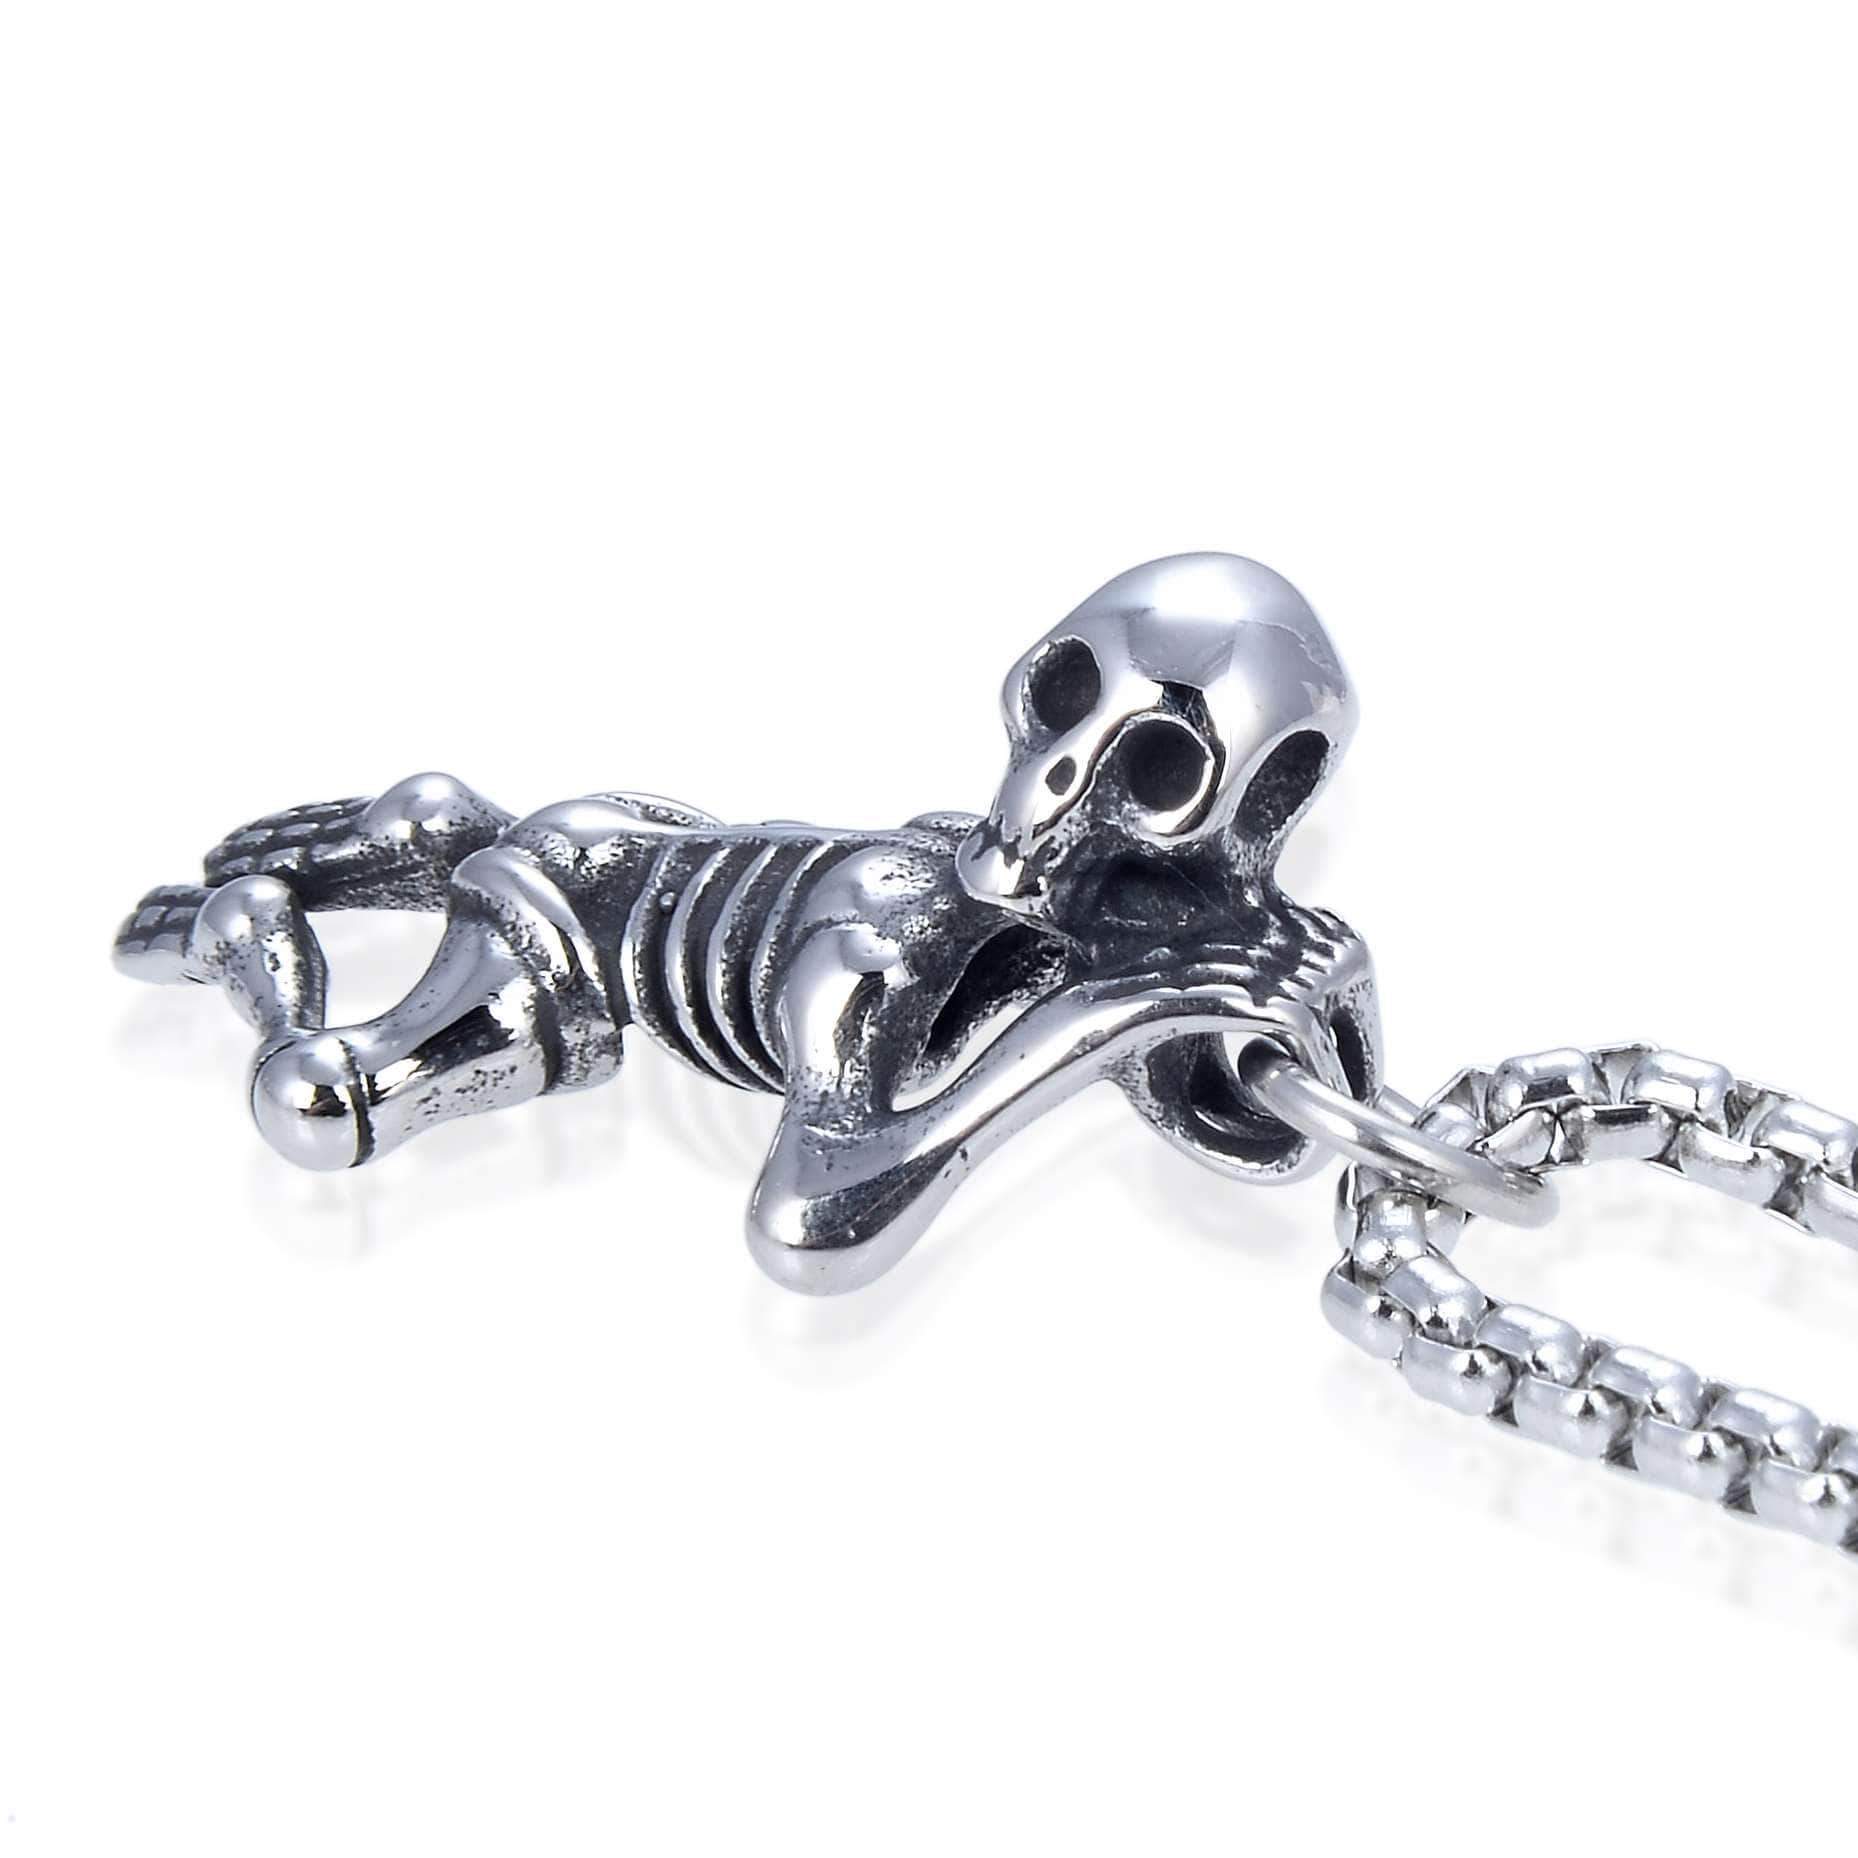 Kalifano Steel Hearts Jewelry Steel Hearts Dangling Skeleton Necklace SHN120-58